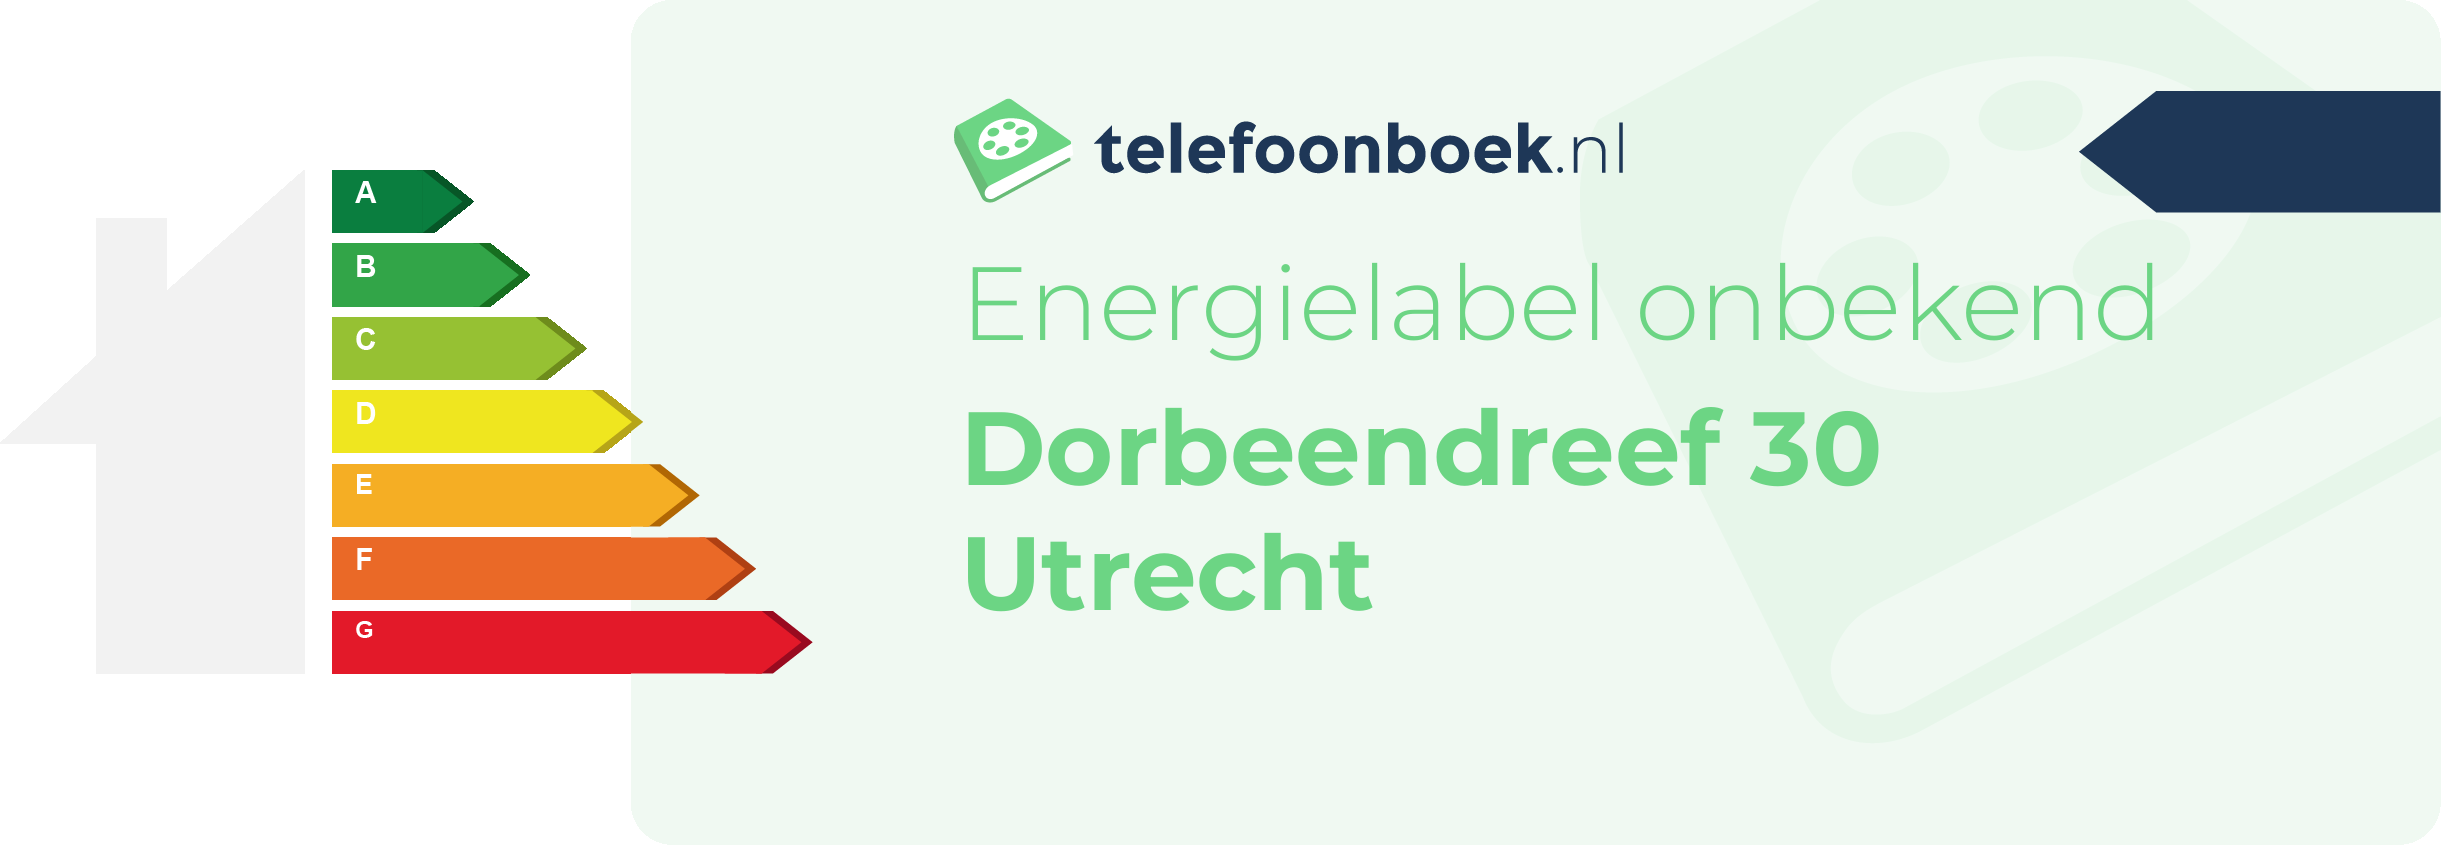 Energielabel Dorbeendreef 30 Utrecht